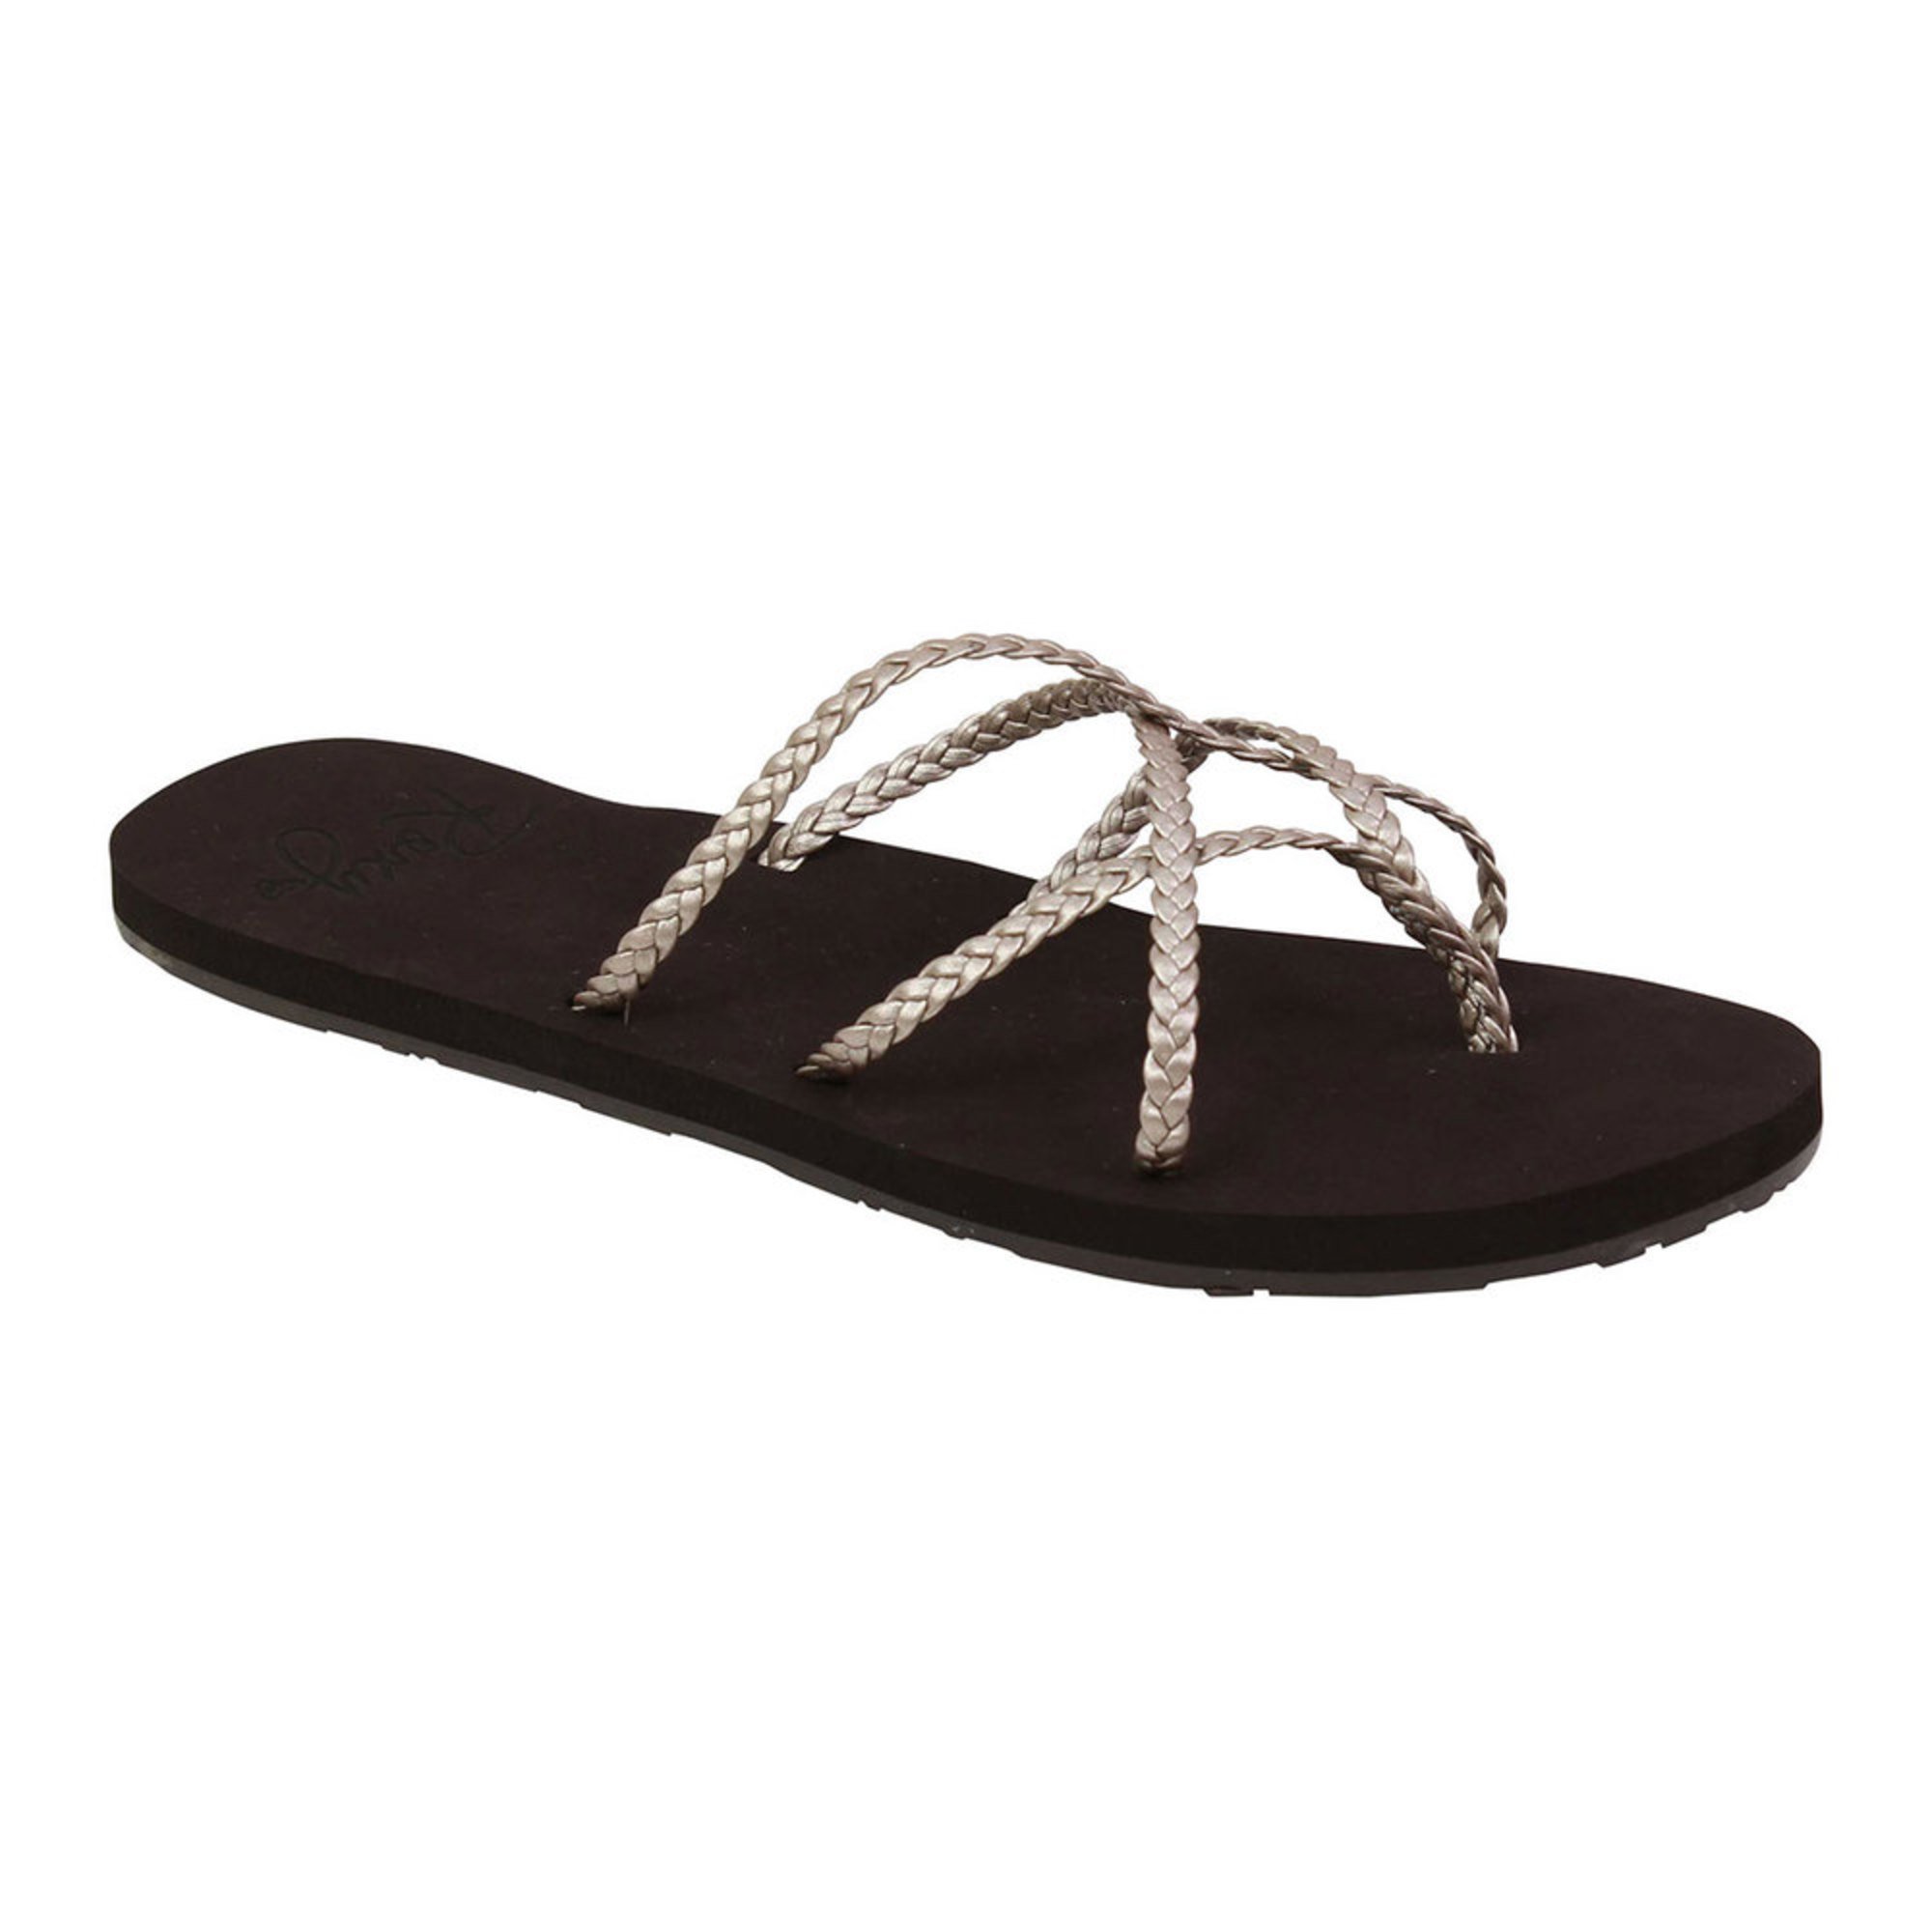 Roxy Women's Trinn J Flip Flop Sandal | Flip Flop Sandals | Shoes ...